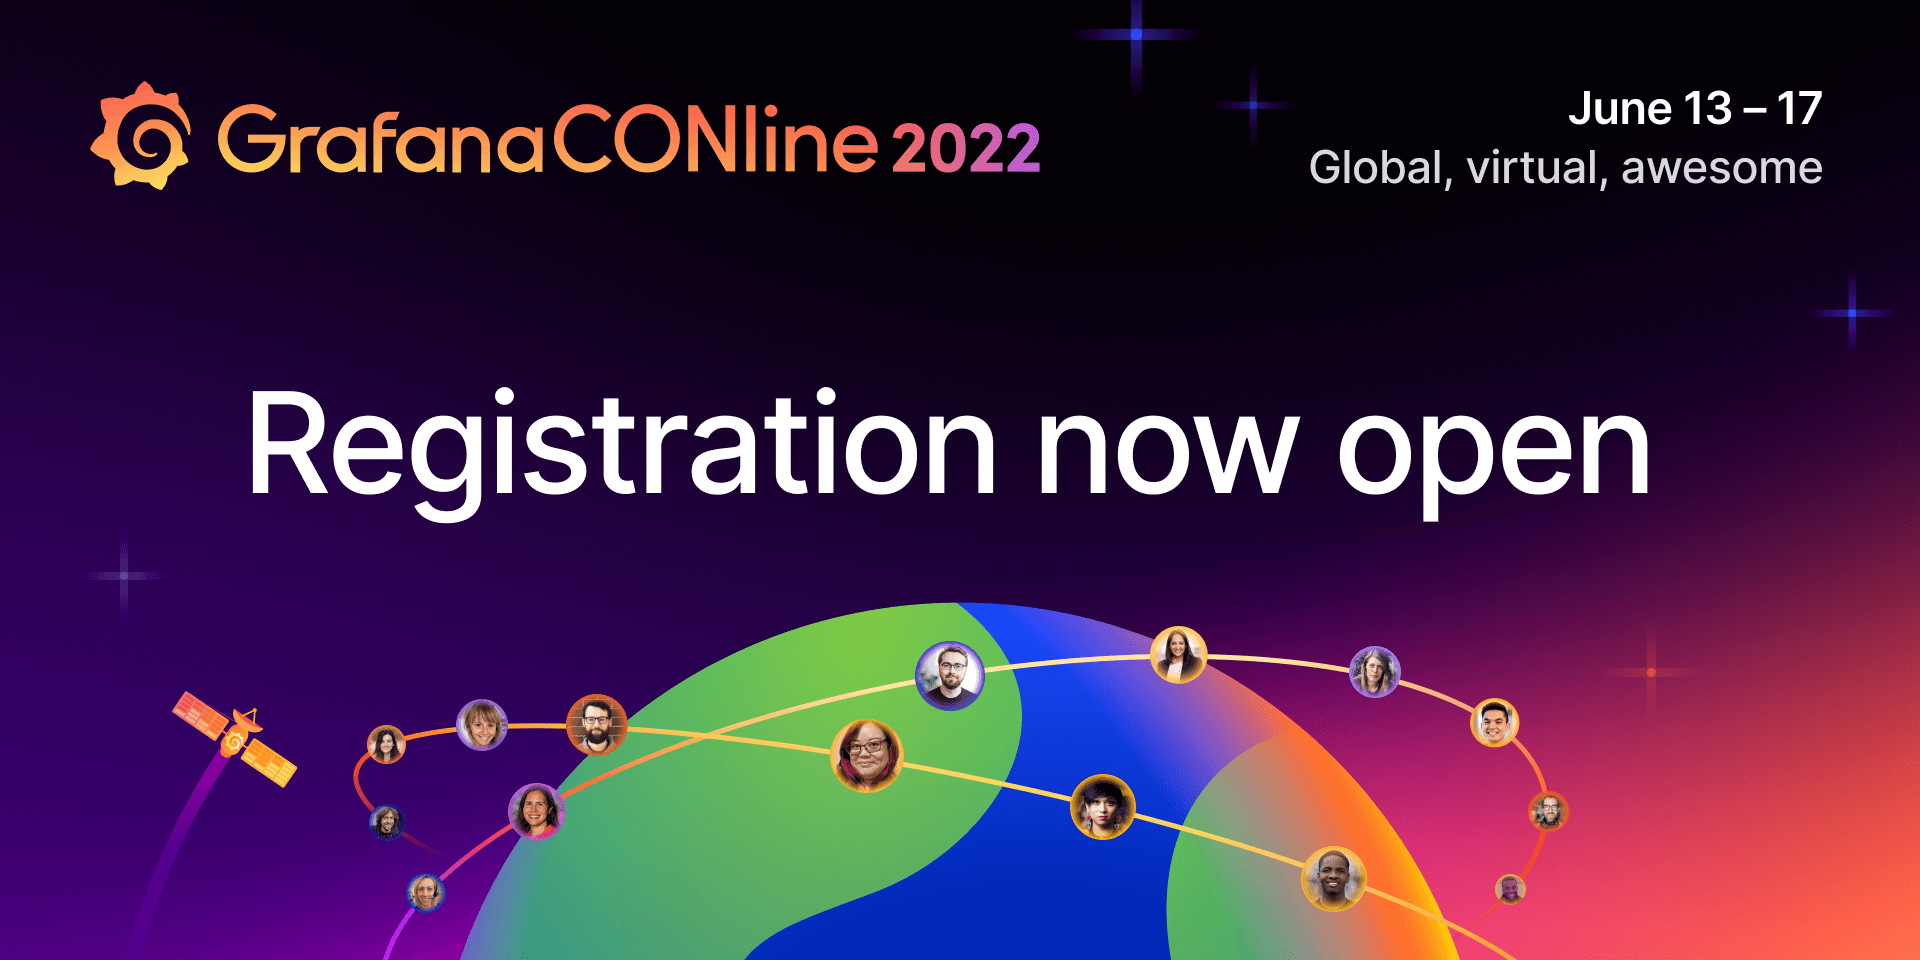 GrafanaCONline 2022: Registration is open.